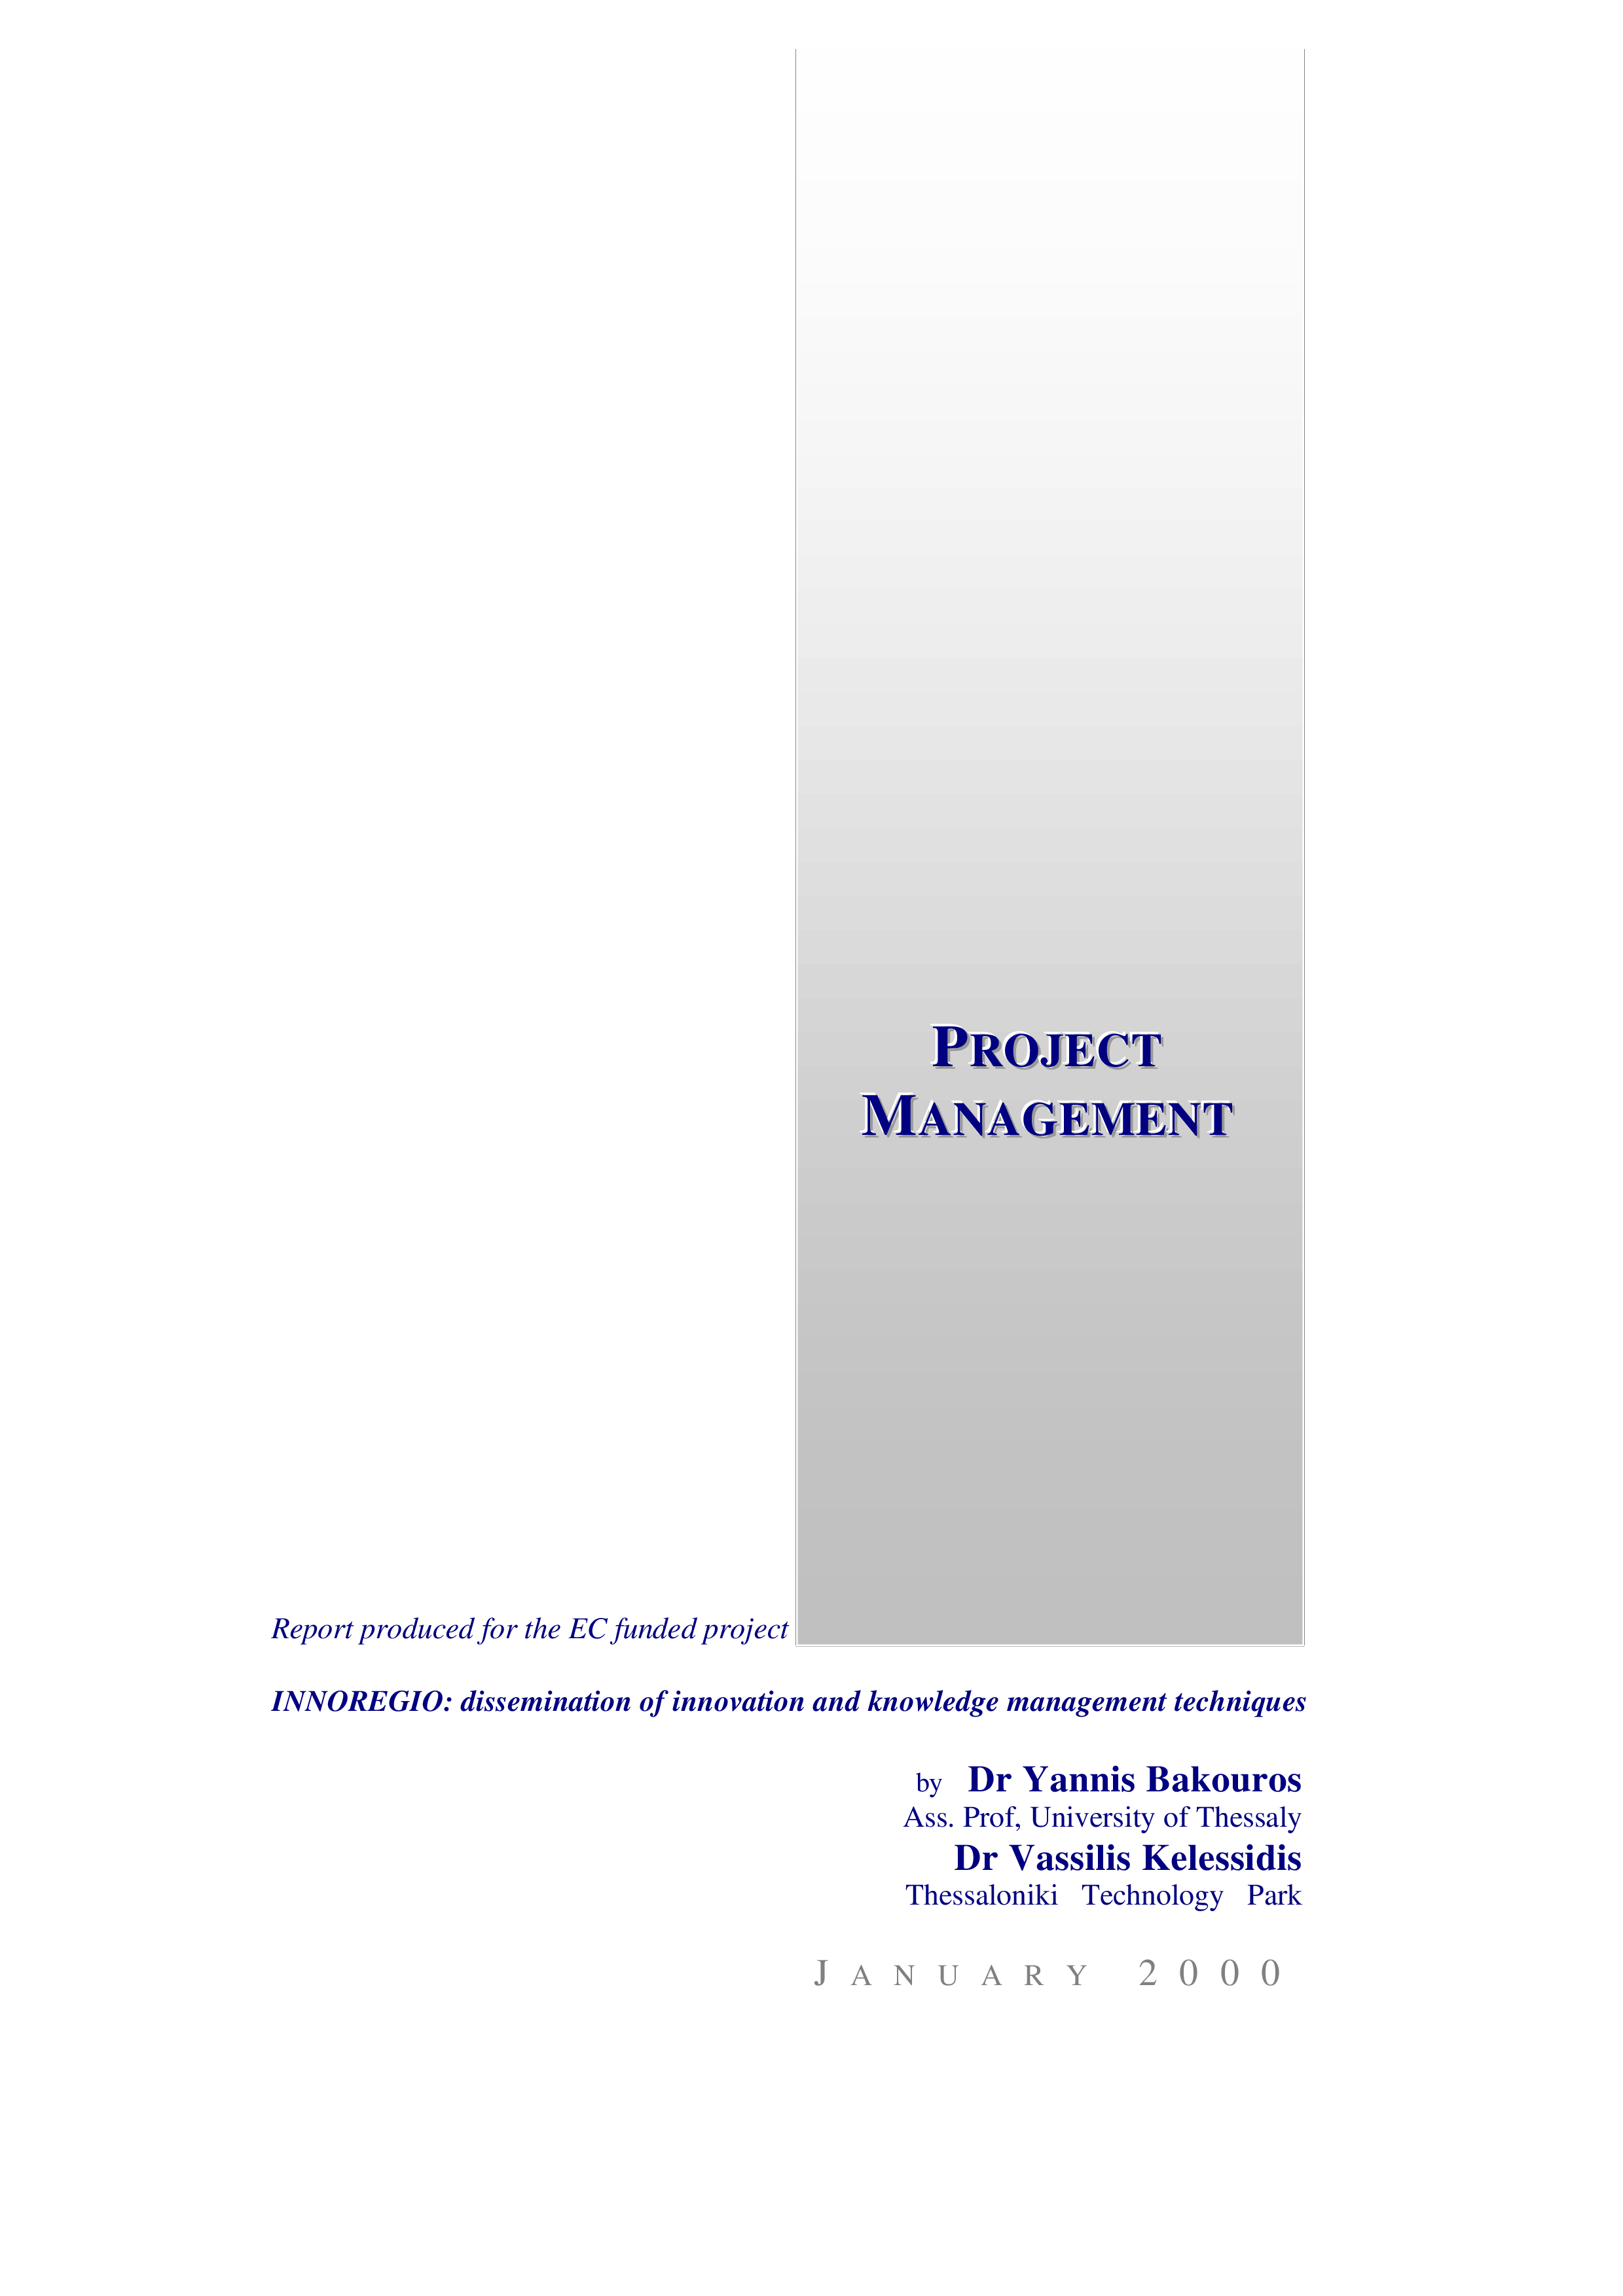 Project Management Activity Schedule 模板